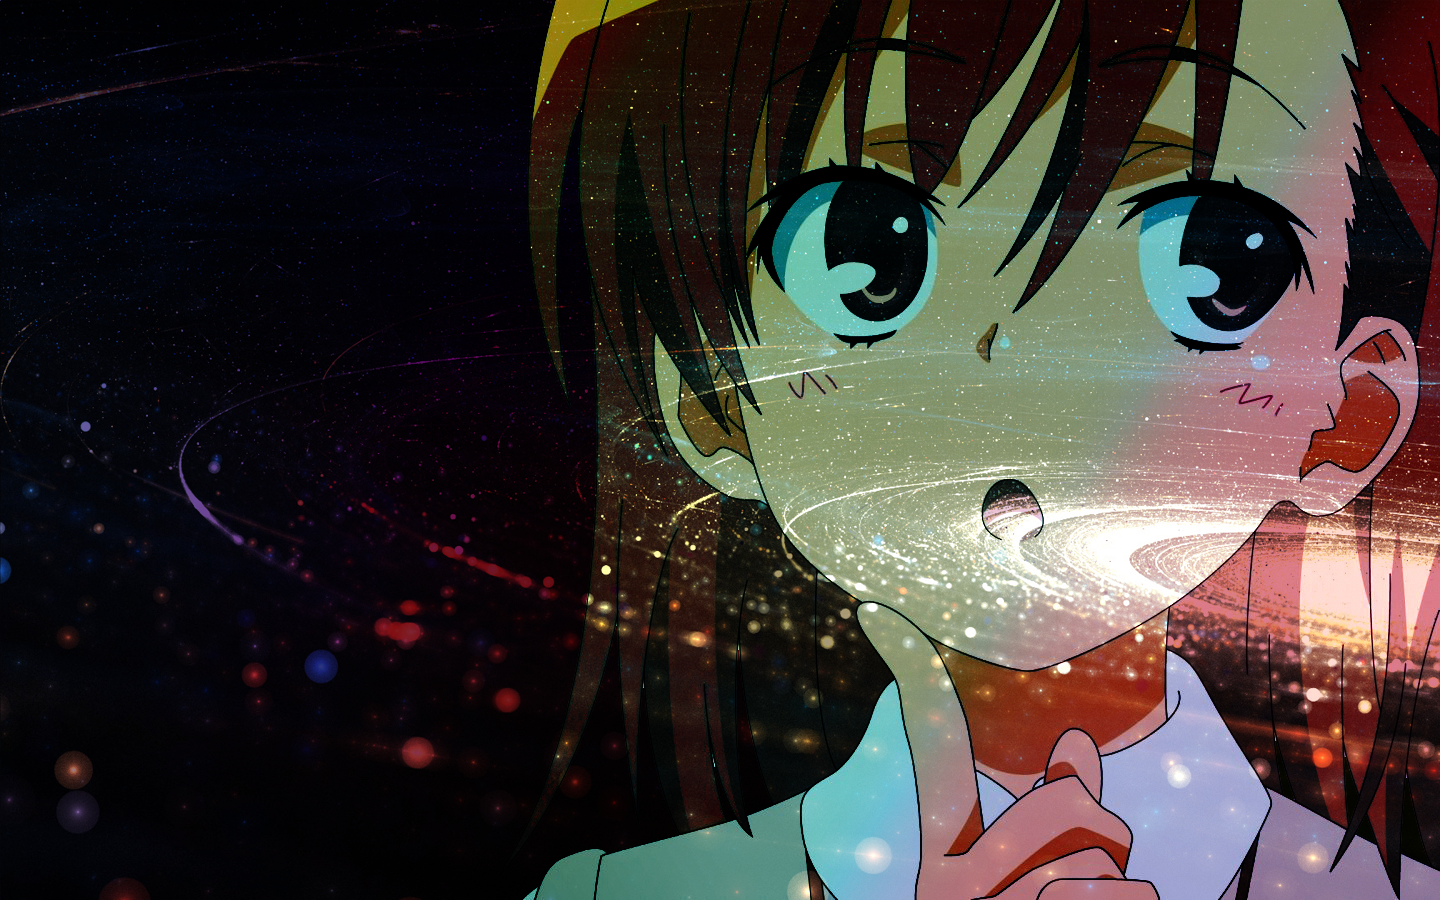 Anime Girls Misaka Mikoto Space To Aru Kagaku No Railgun To Aru Majutsu No Index Picture In Picture 1440x900